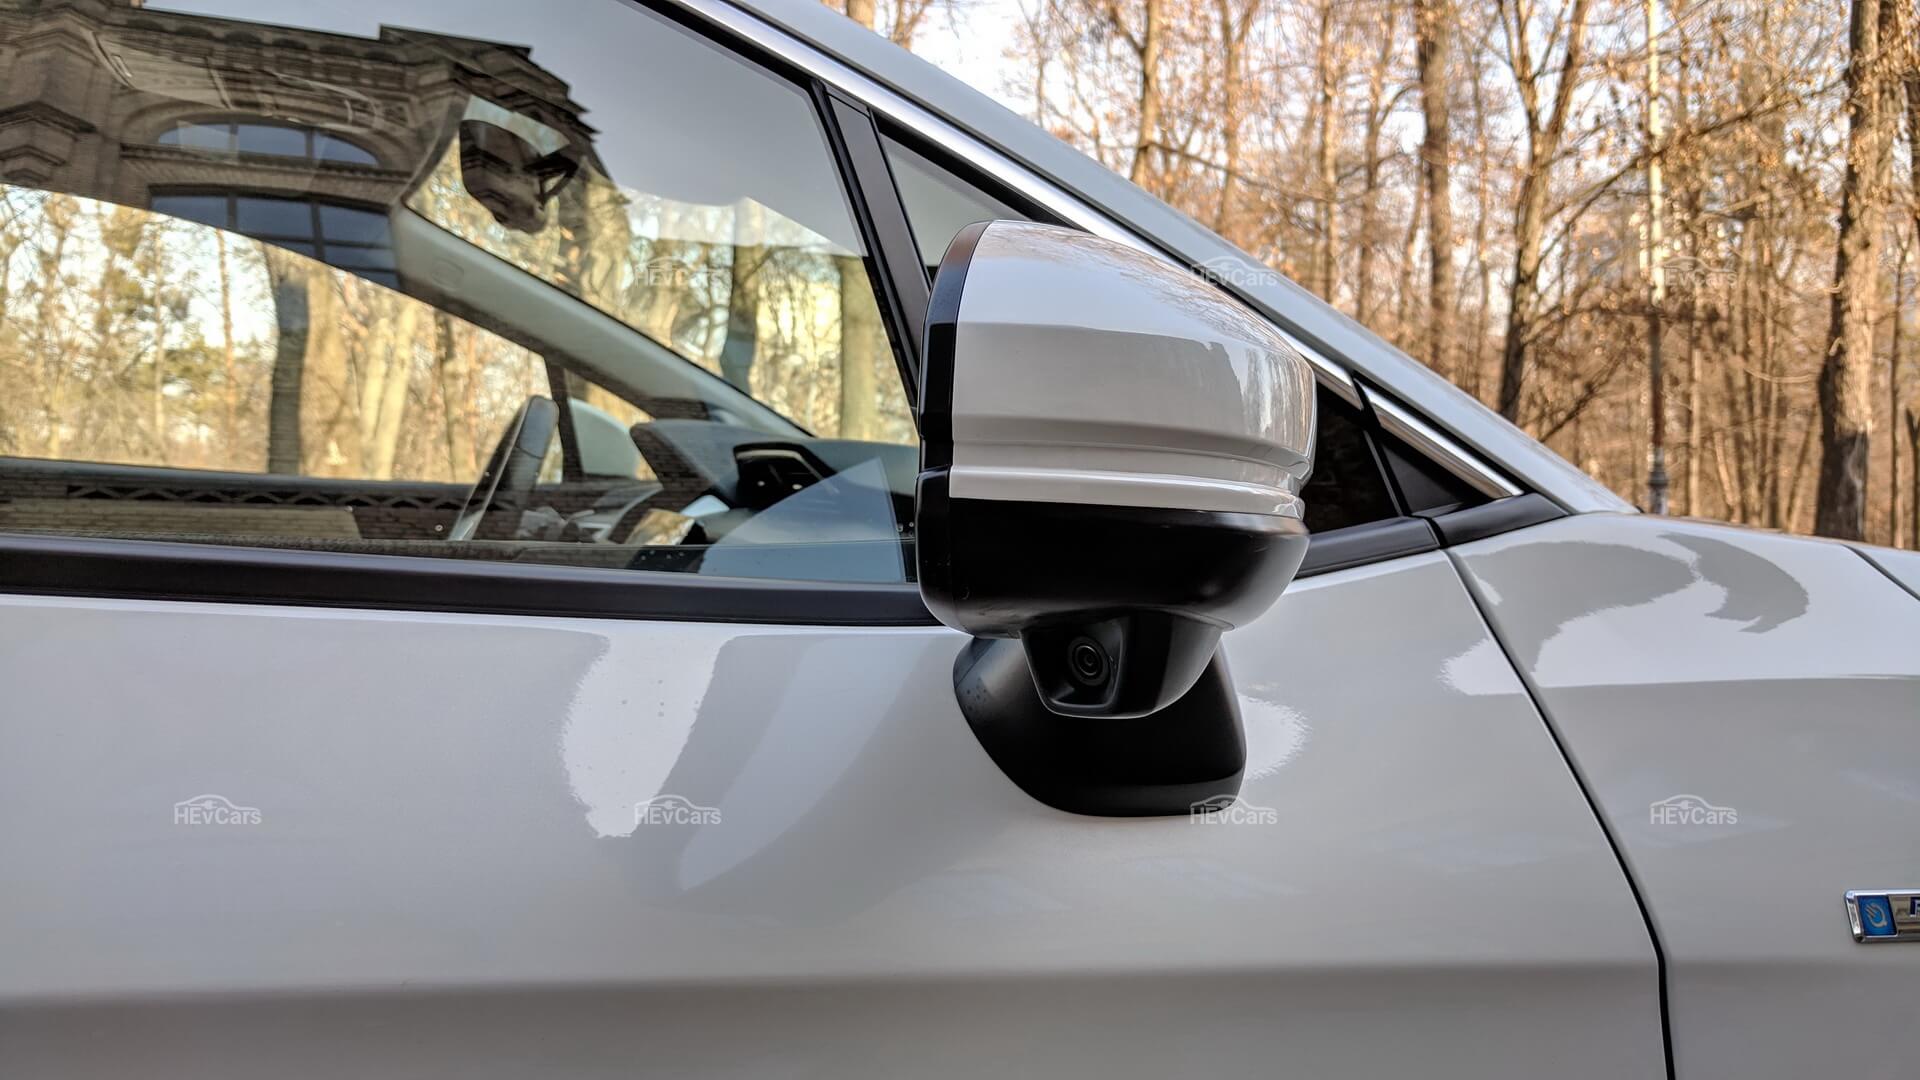 Honda Clarity Plug-in Hybrid использует камеру, расположенную под правым наружным зеркалом, для отображения проезжей части на сенсорном экране